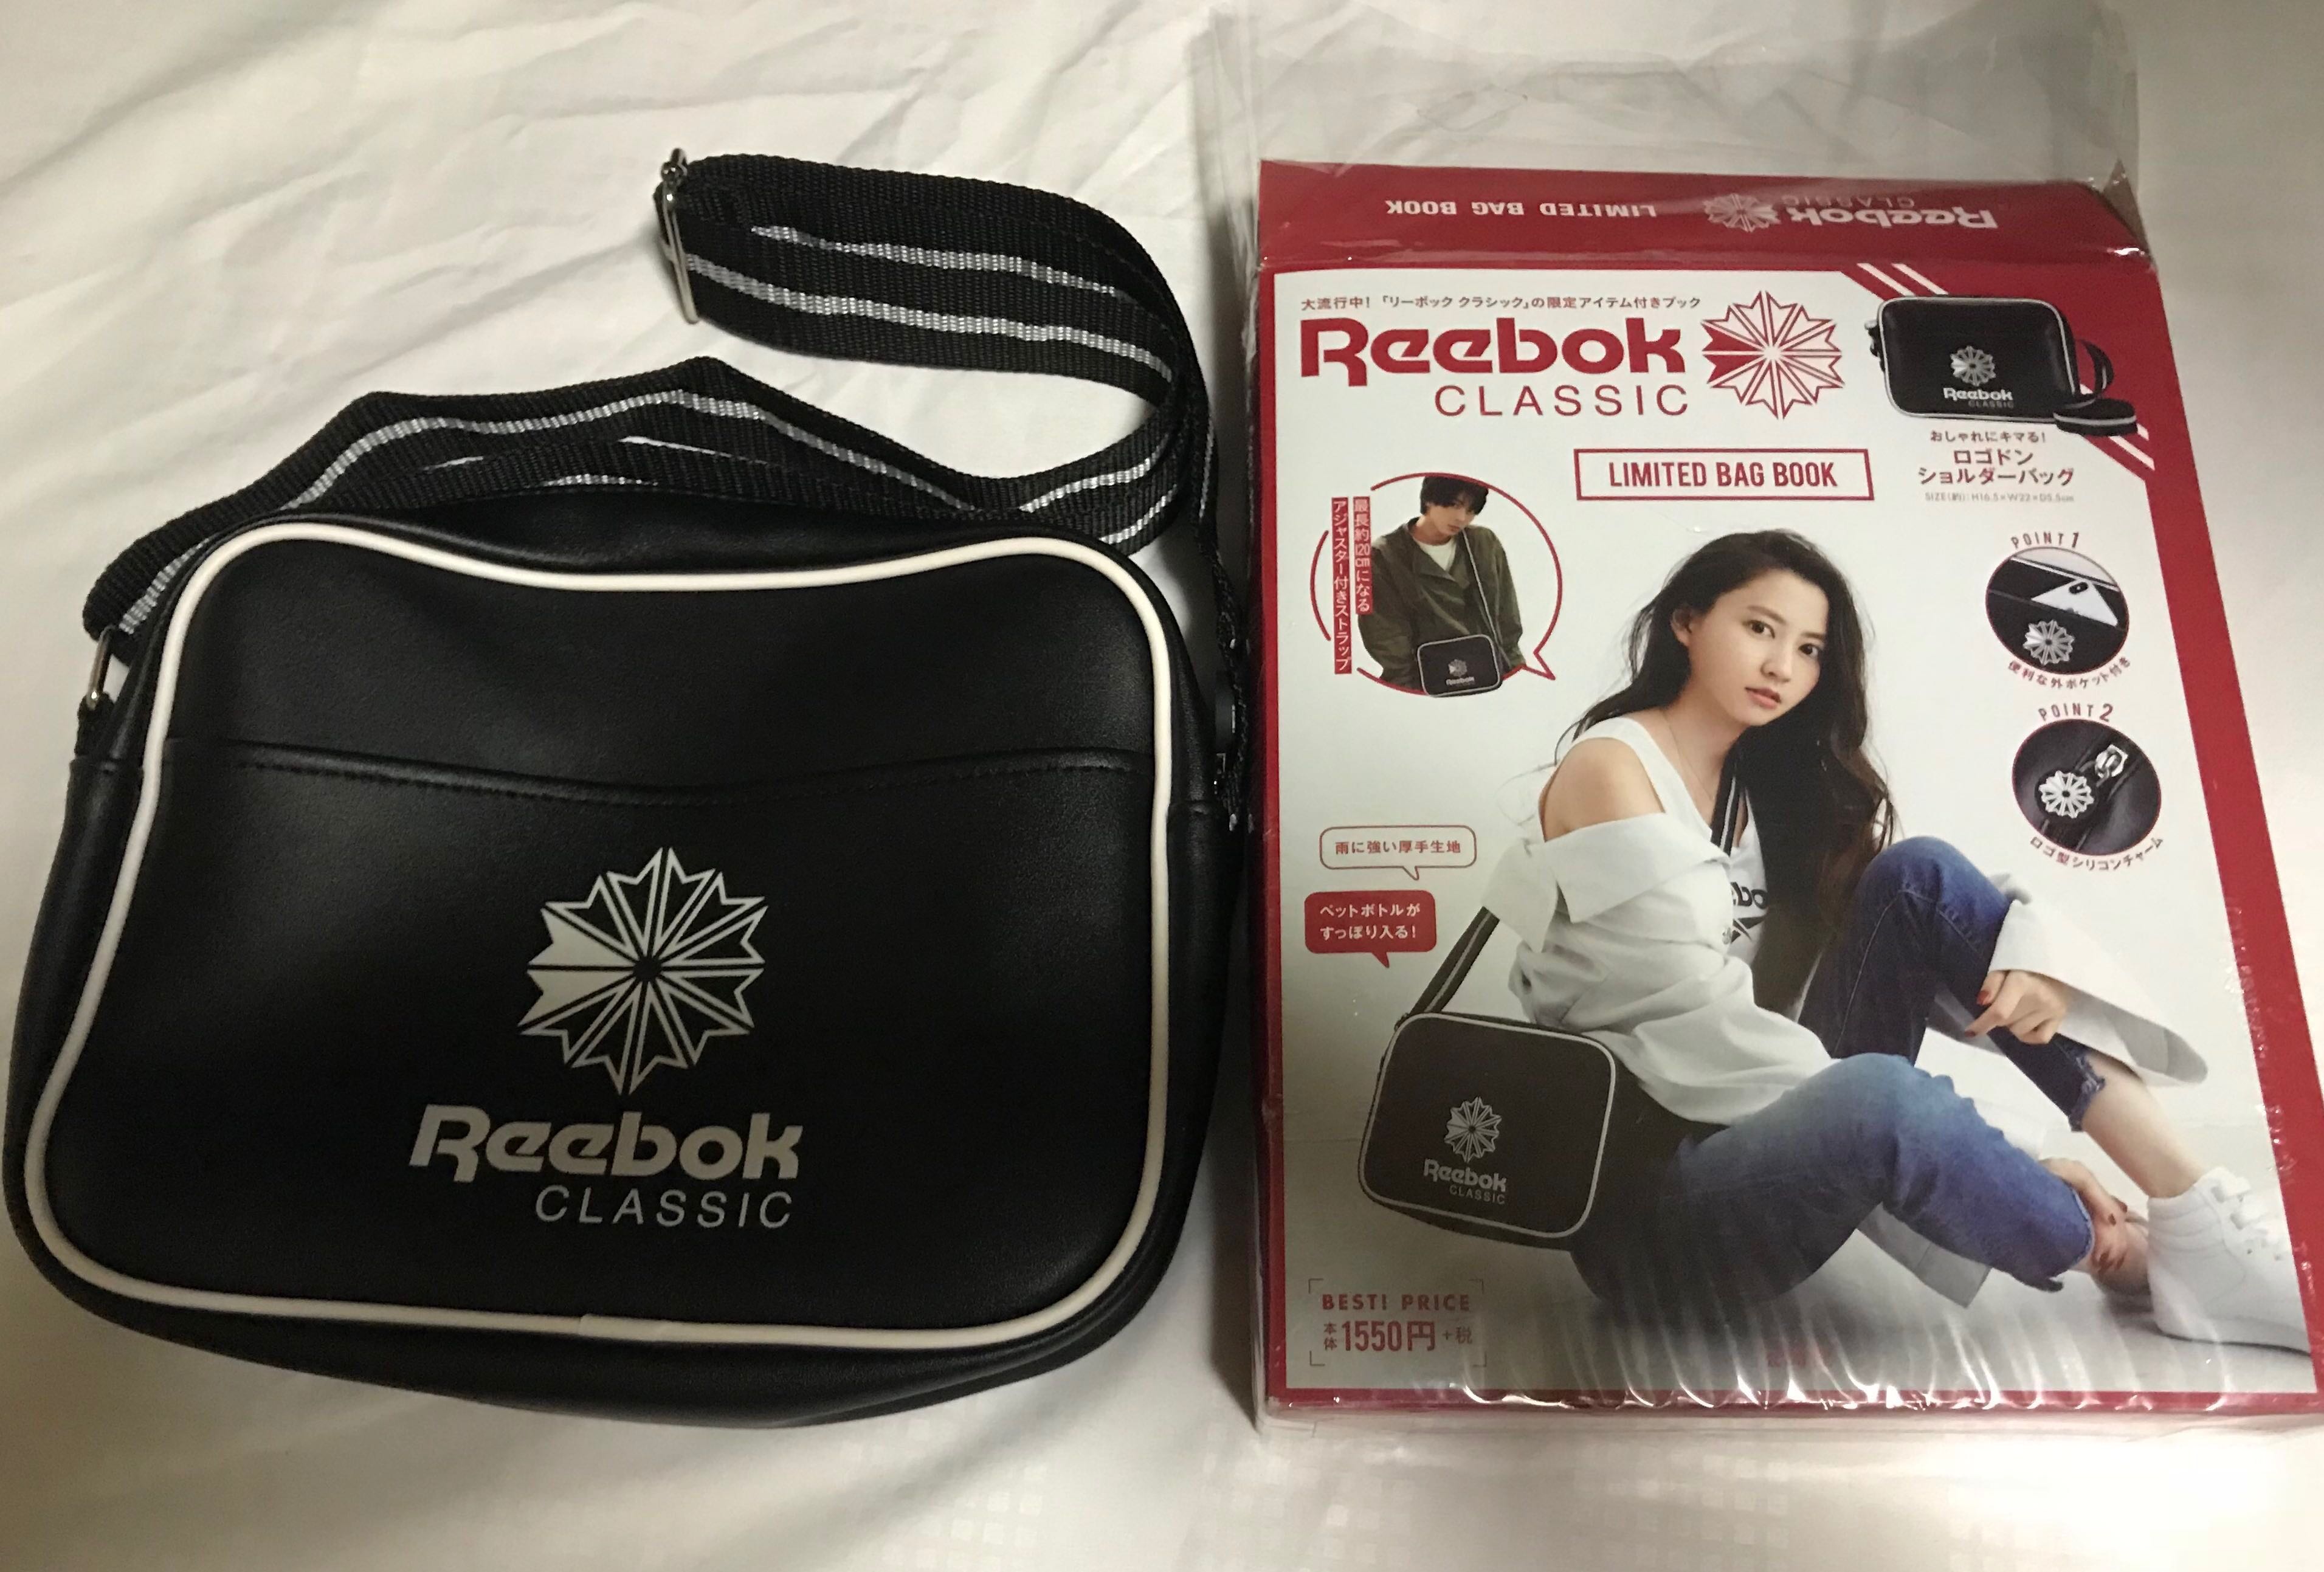 reebok sling bag price